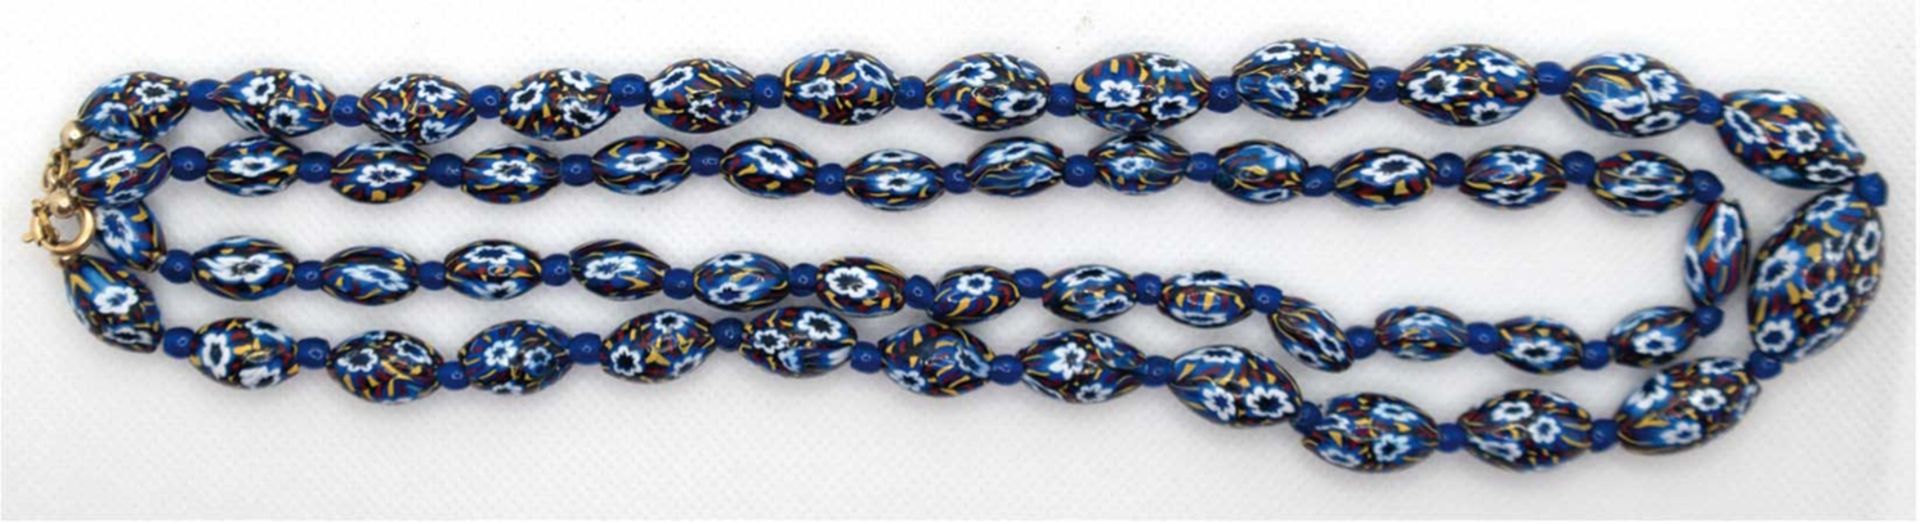 Murano-Glaskette, zweireihig, blaue Oliven mit floralen und verschiedenfarbigen Motiven, Länge ca. 